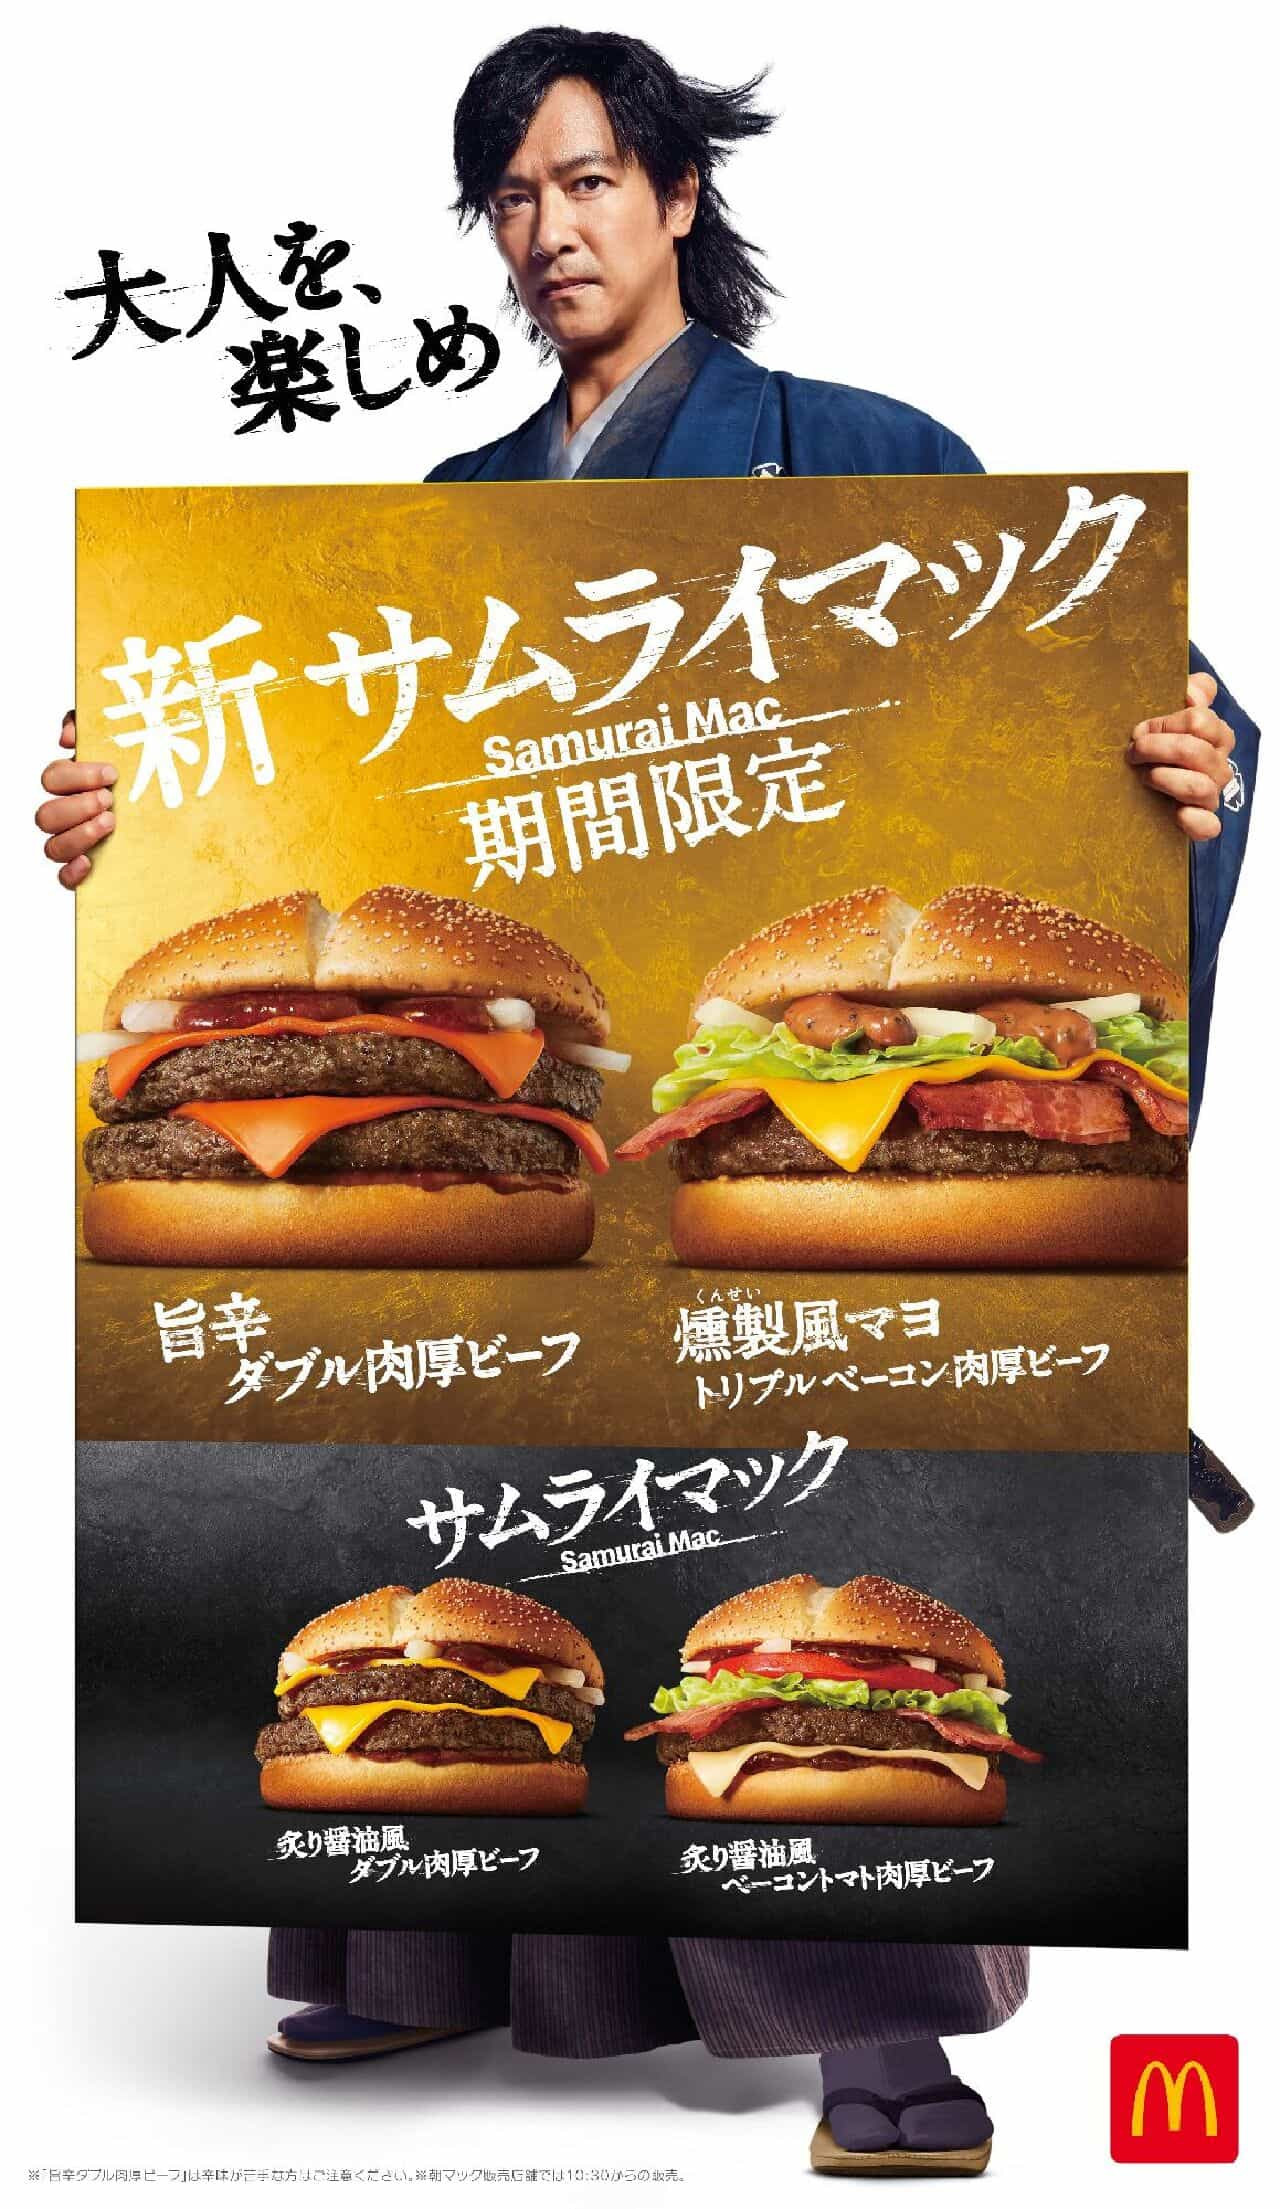 【画像】マクドナルドの新商品「旨辛 ダブル肉厚ビーフ」と「燻製風マヨ トリプルベーコン肉厚ビーフ」